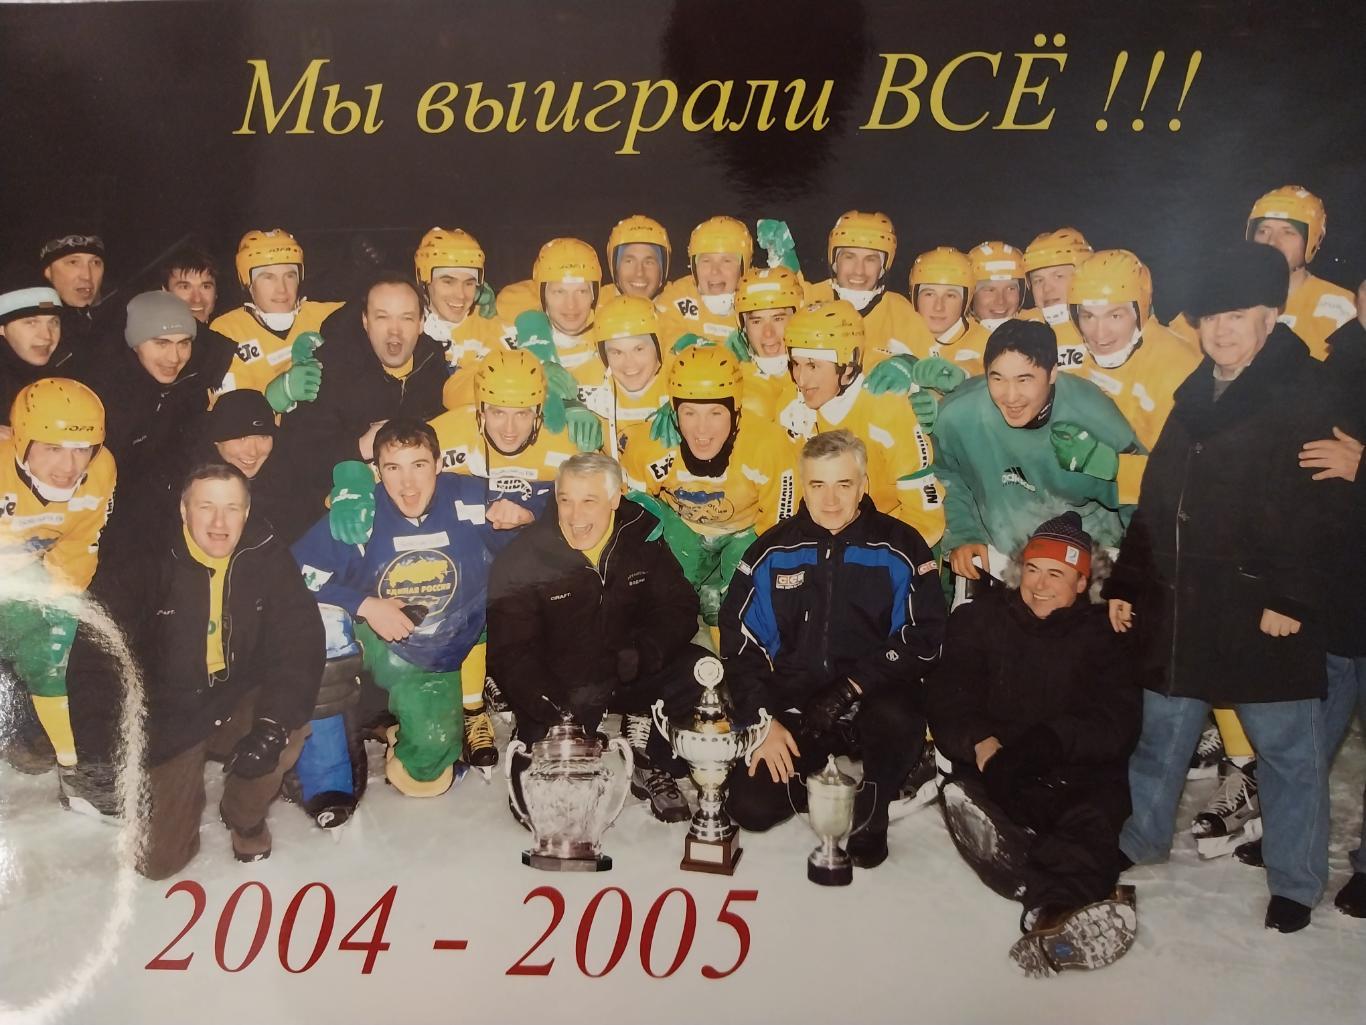 ХК Водник Архангельск 2004-2005. хоккей с мячом